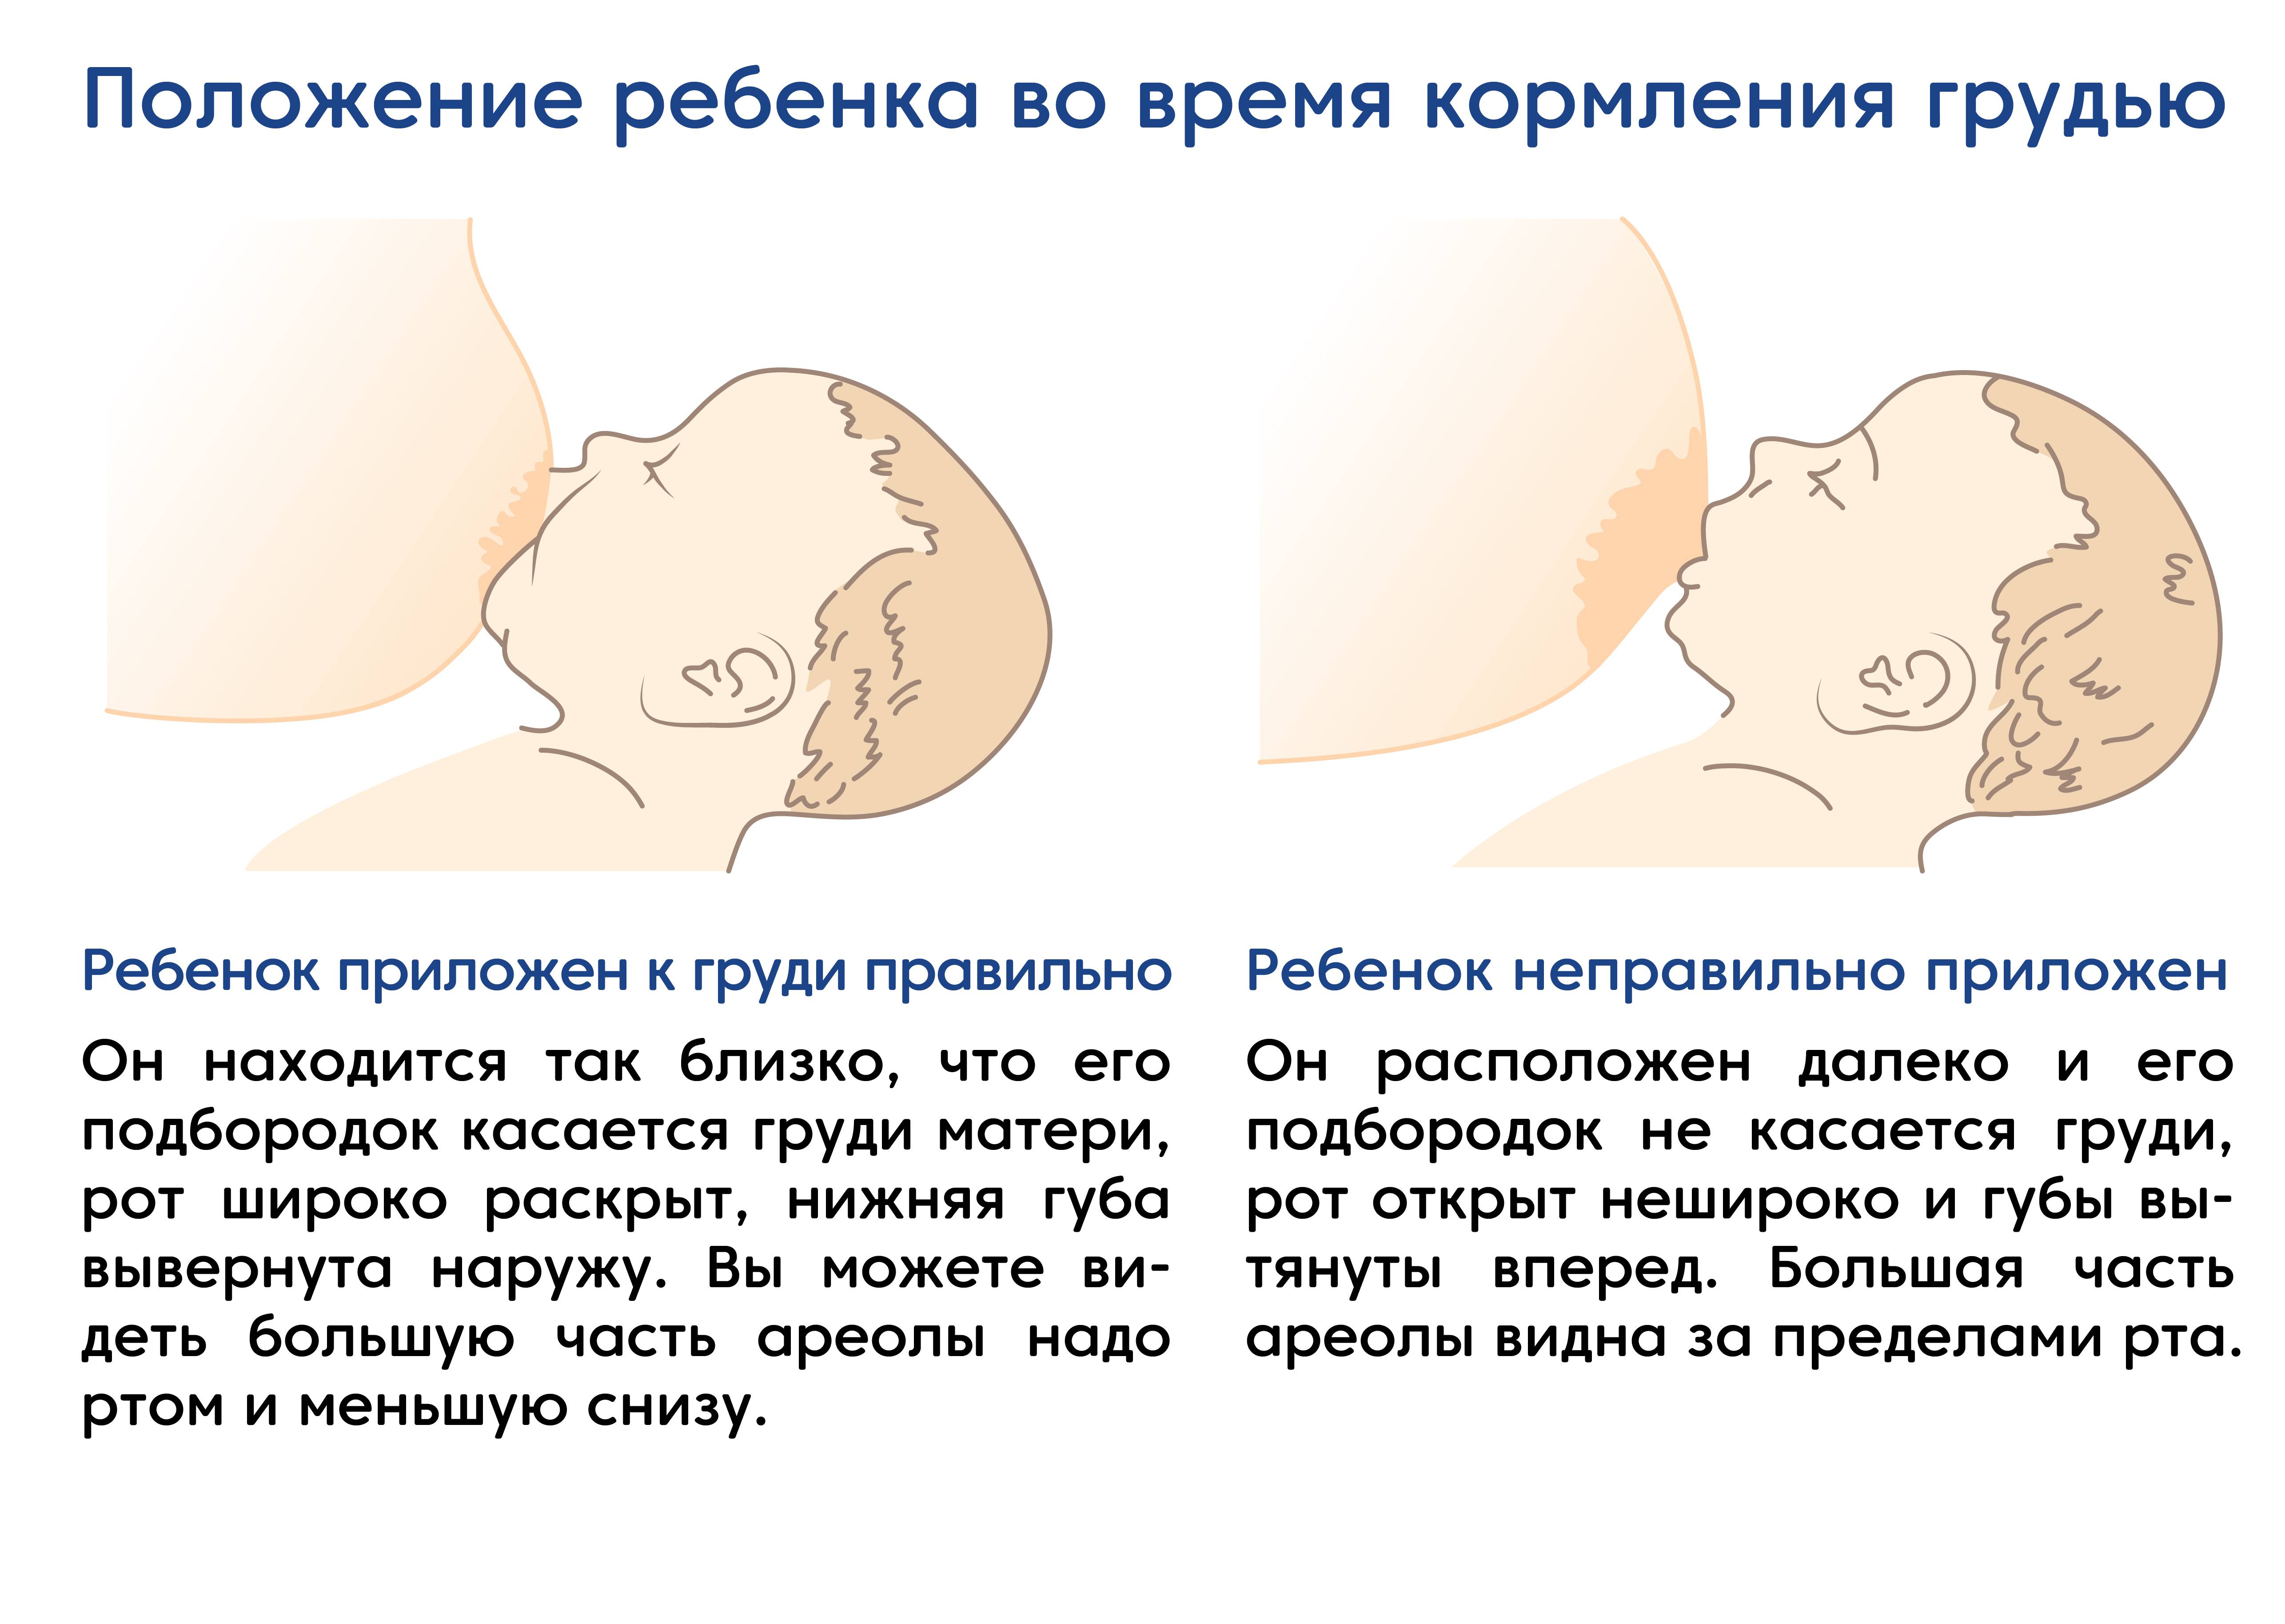 Как правильно кормить новорожденного грудным молоком: первое прикладывание, удобные позы, решение основных проблем